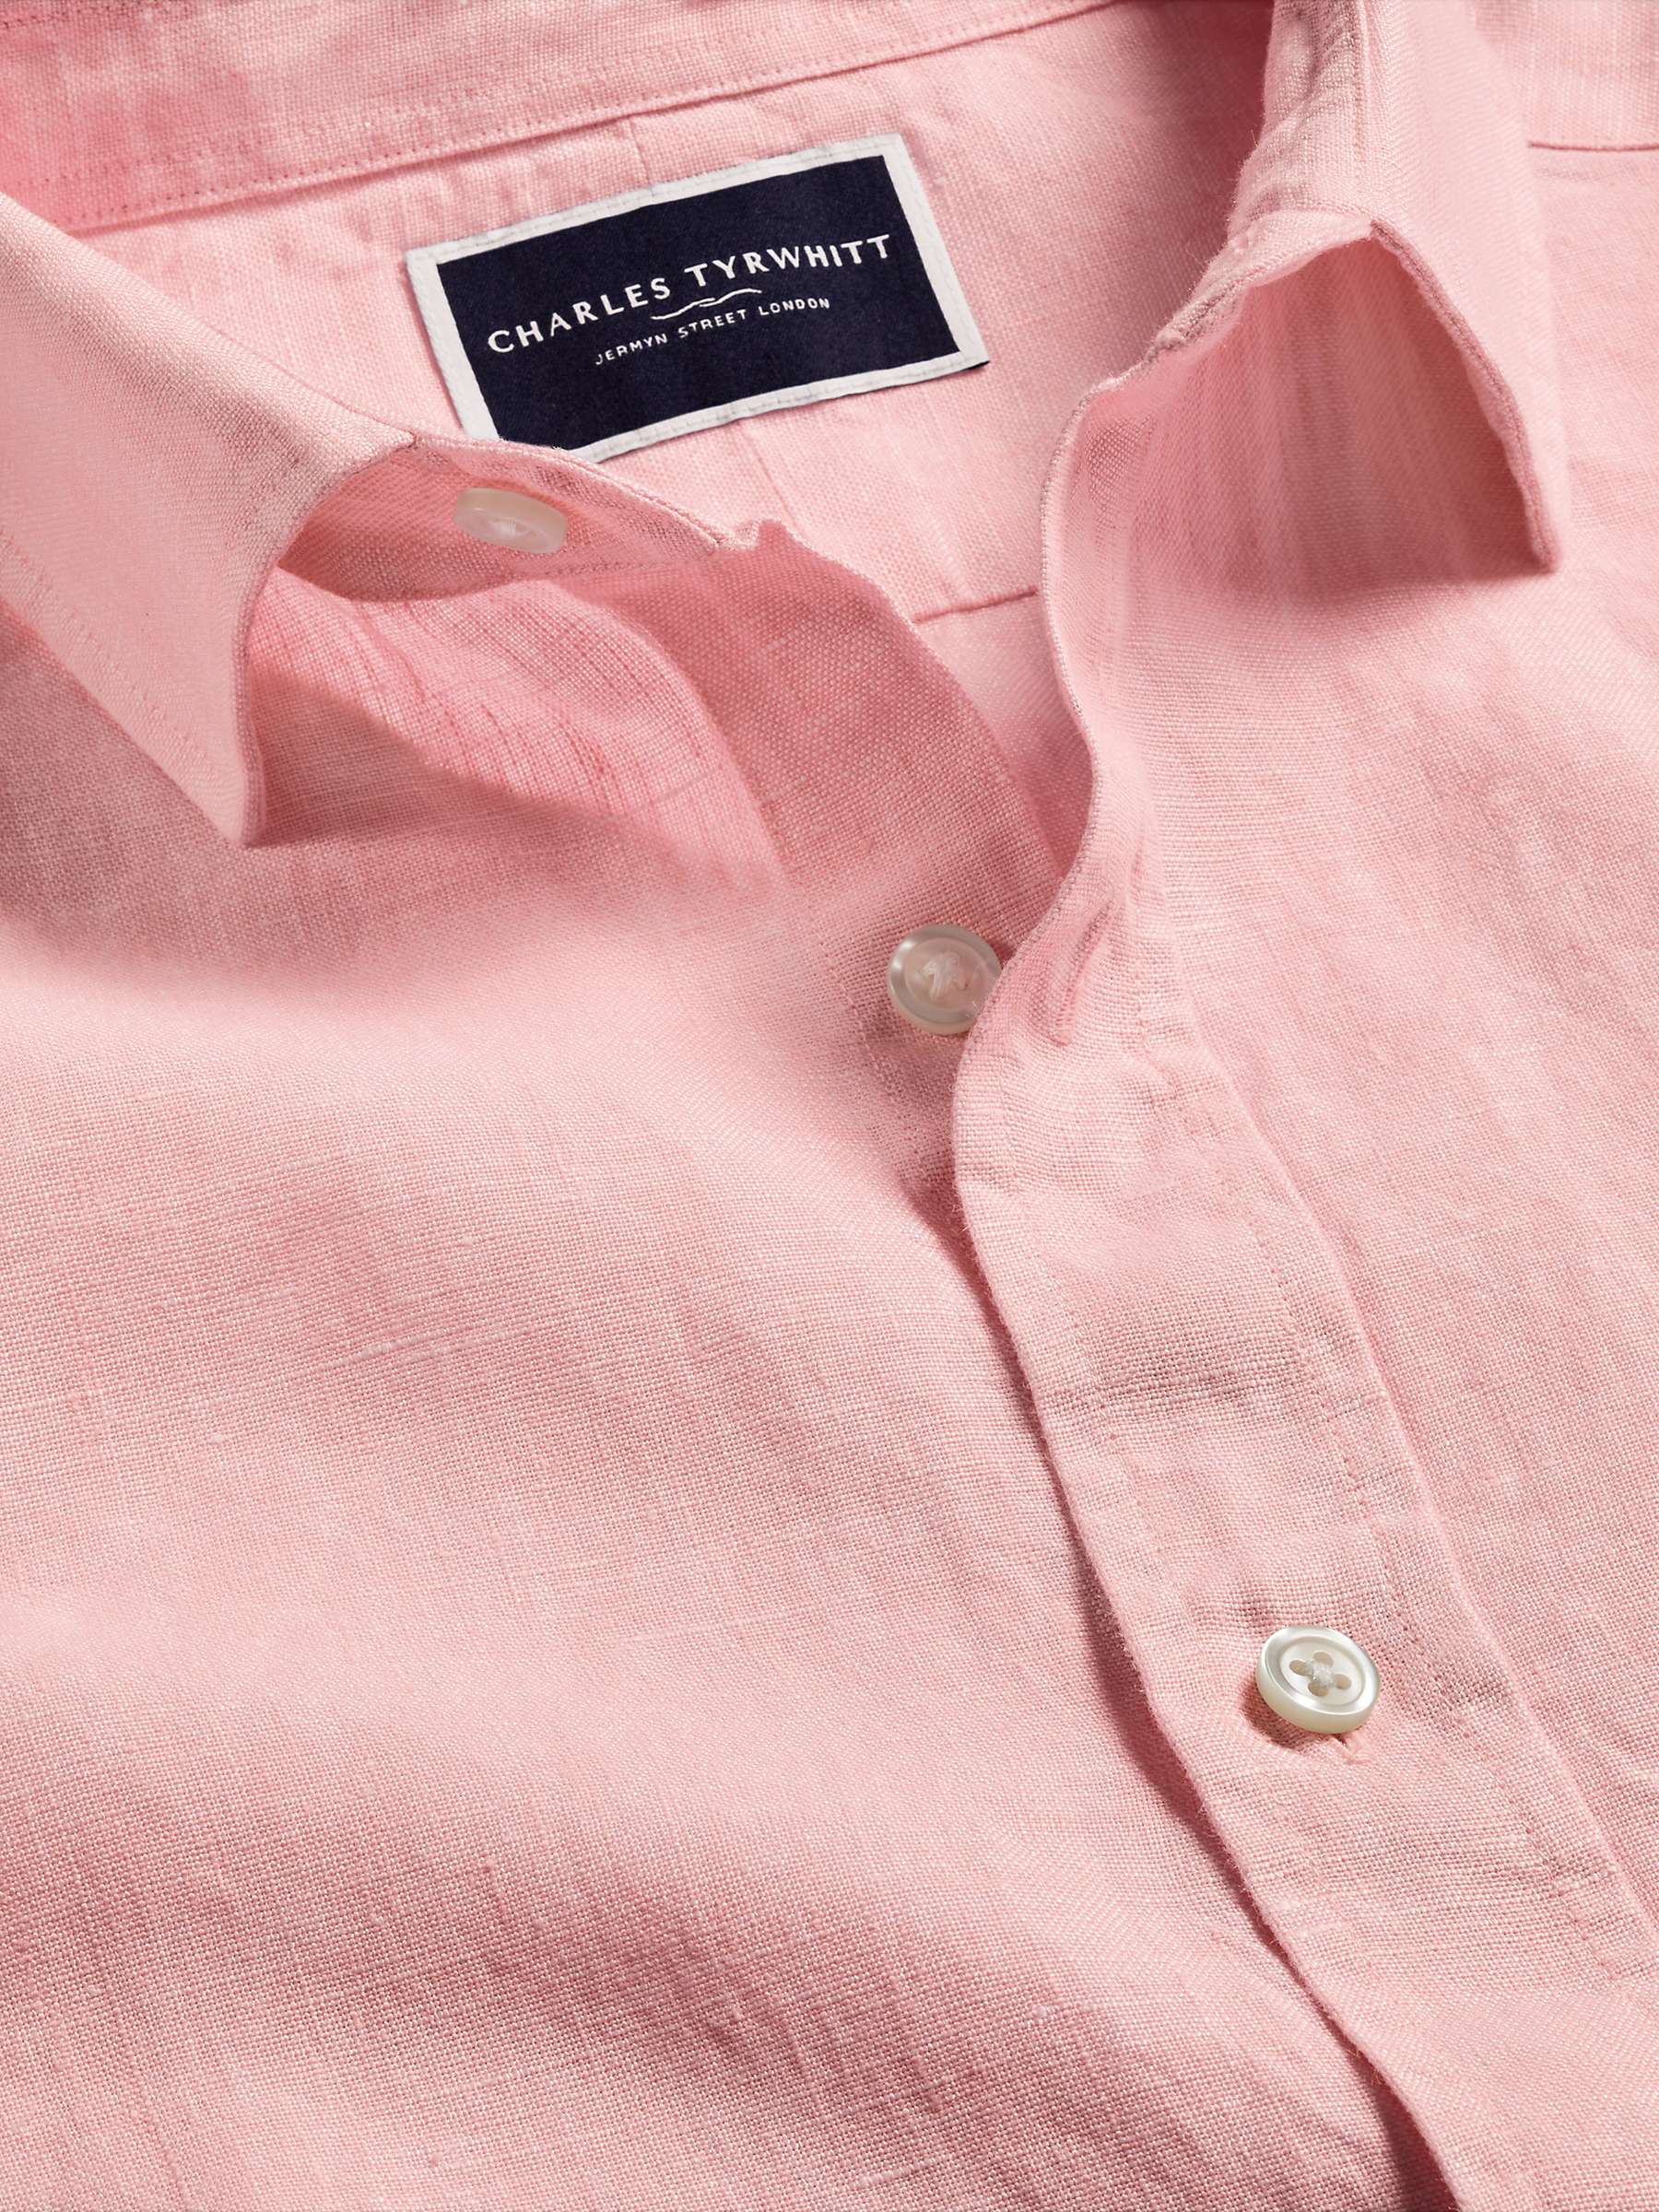 Buy Charles Tyrwhitt Slim Fit Linen Shirt Online at johnlewis.com